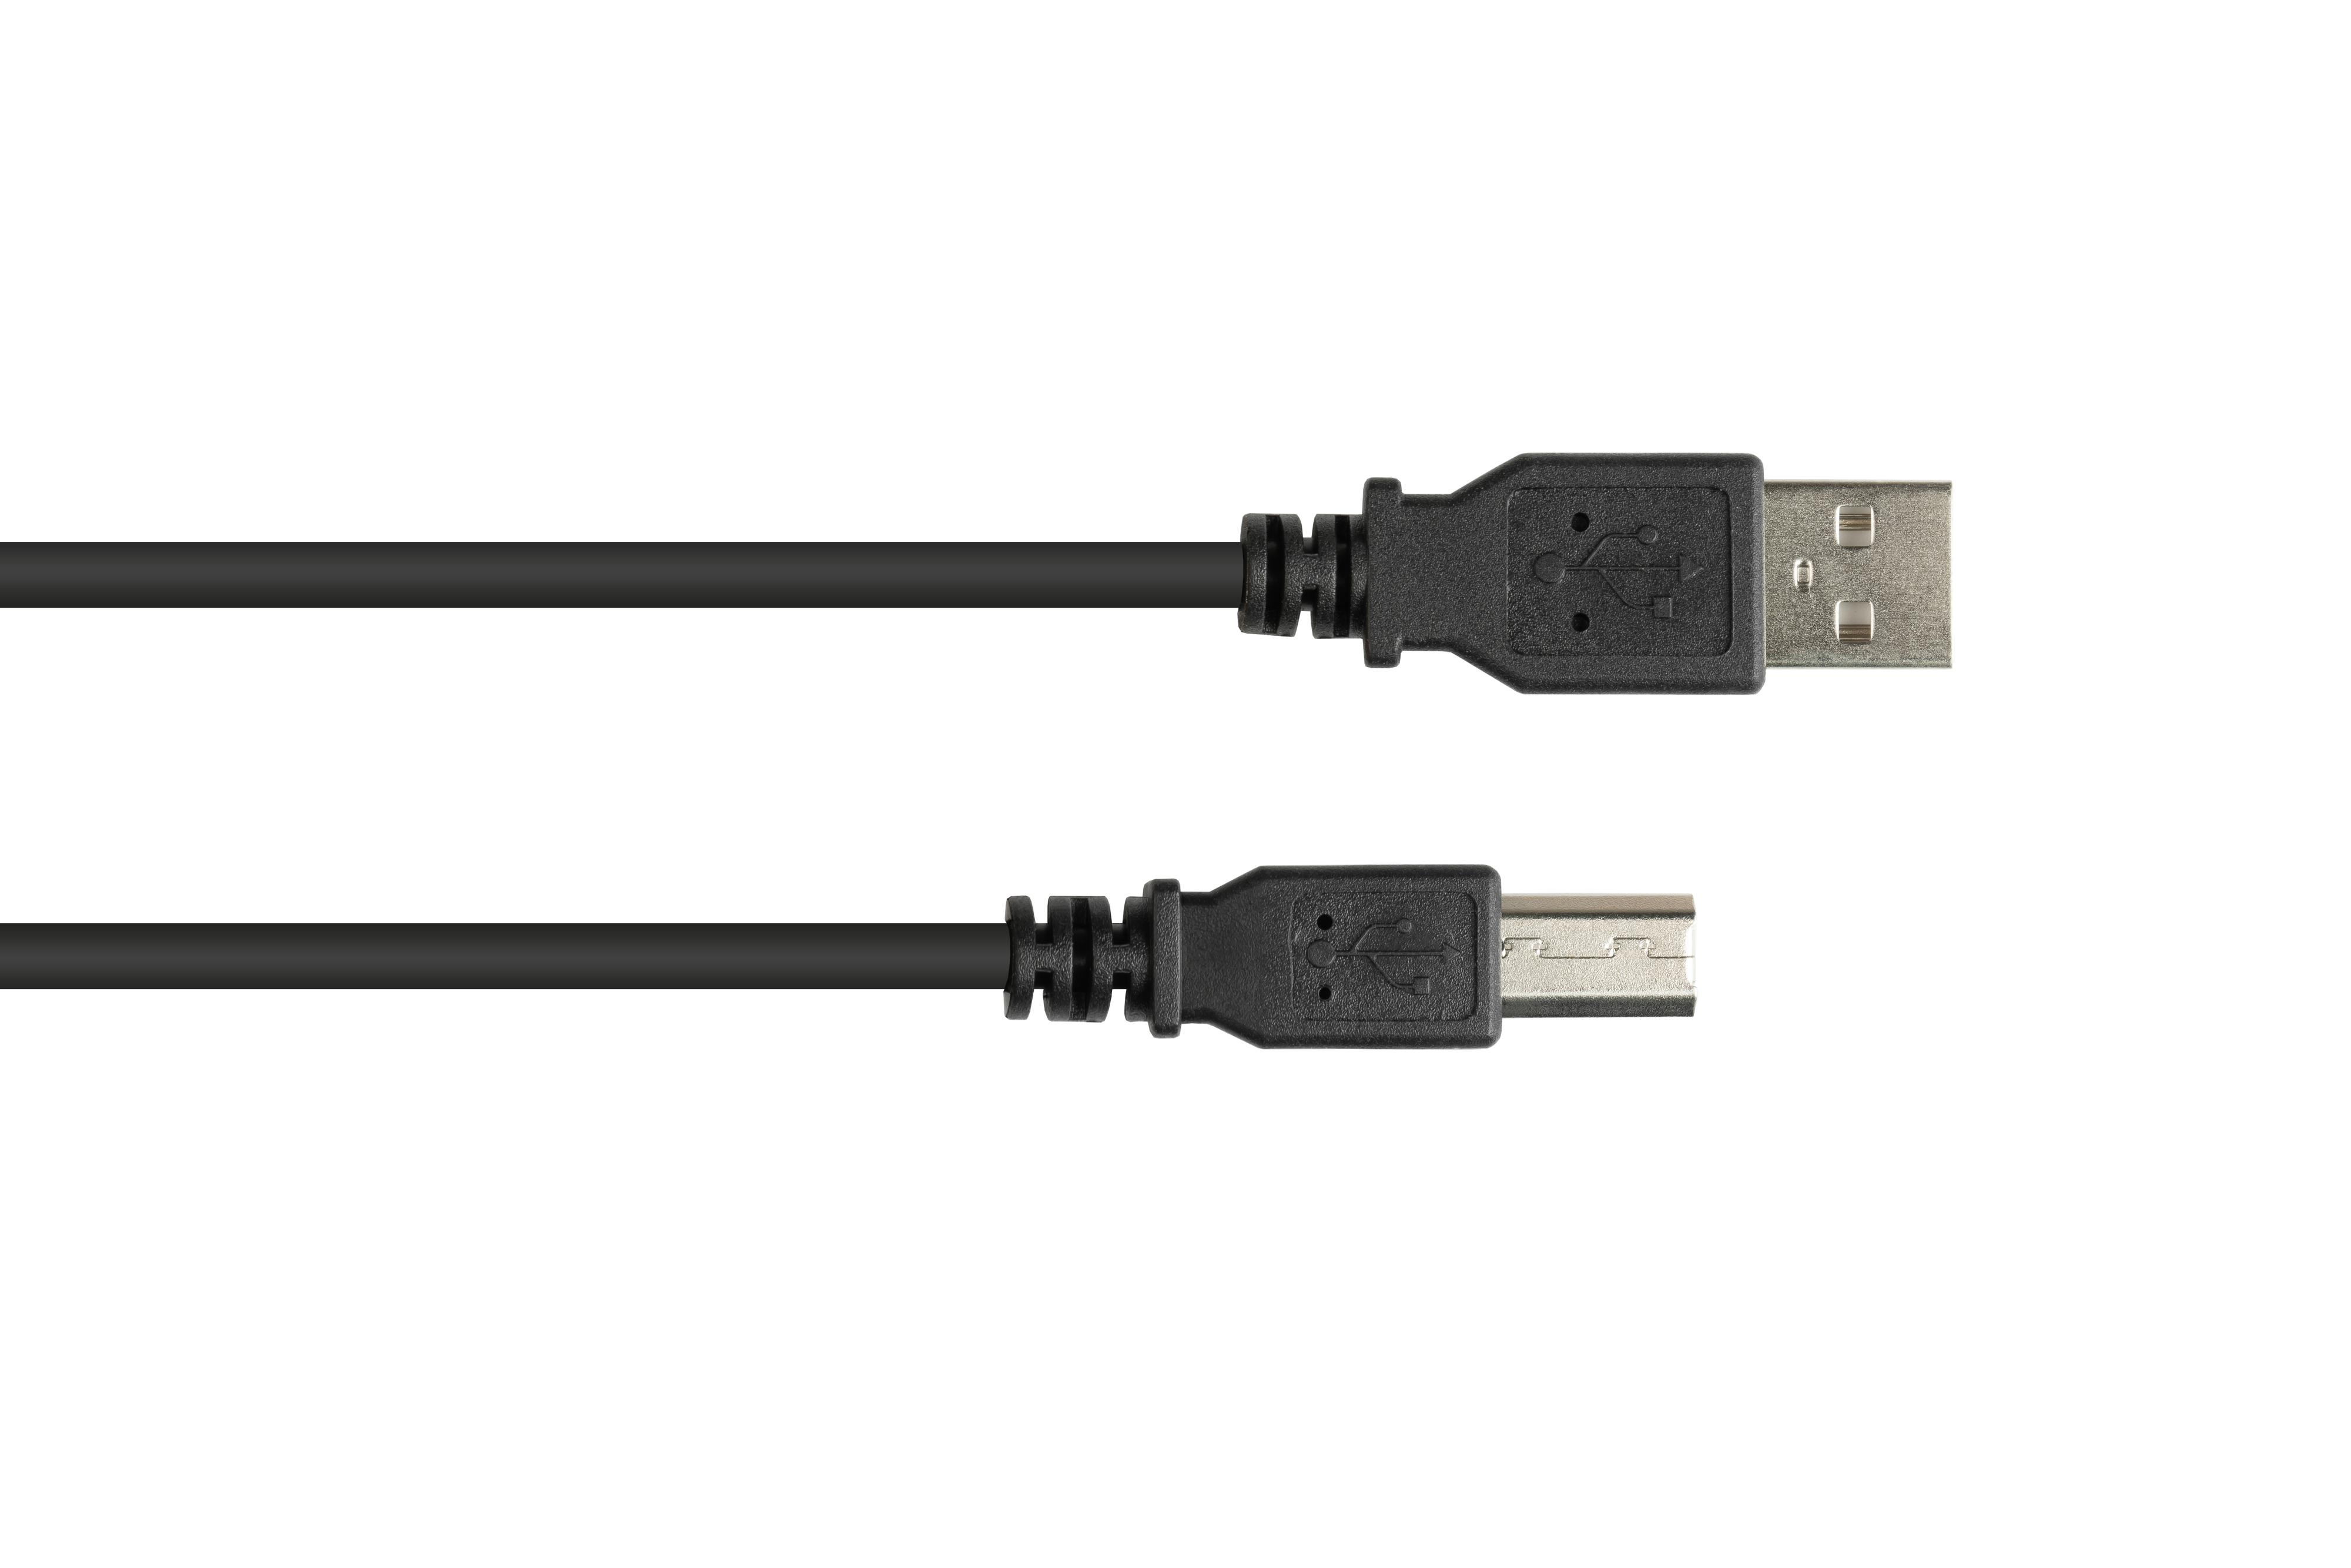 CONNECTIONS an B, Stecker A GOOD Stecker 2.0 schwarz USB Anschlusskabel